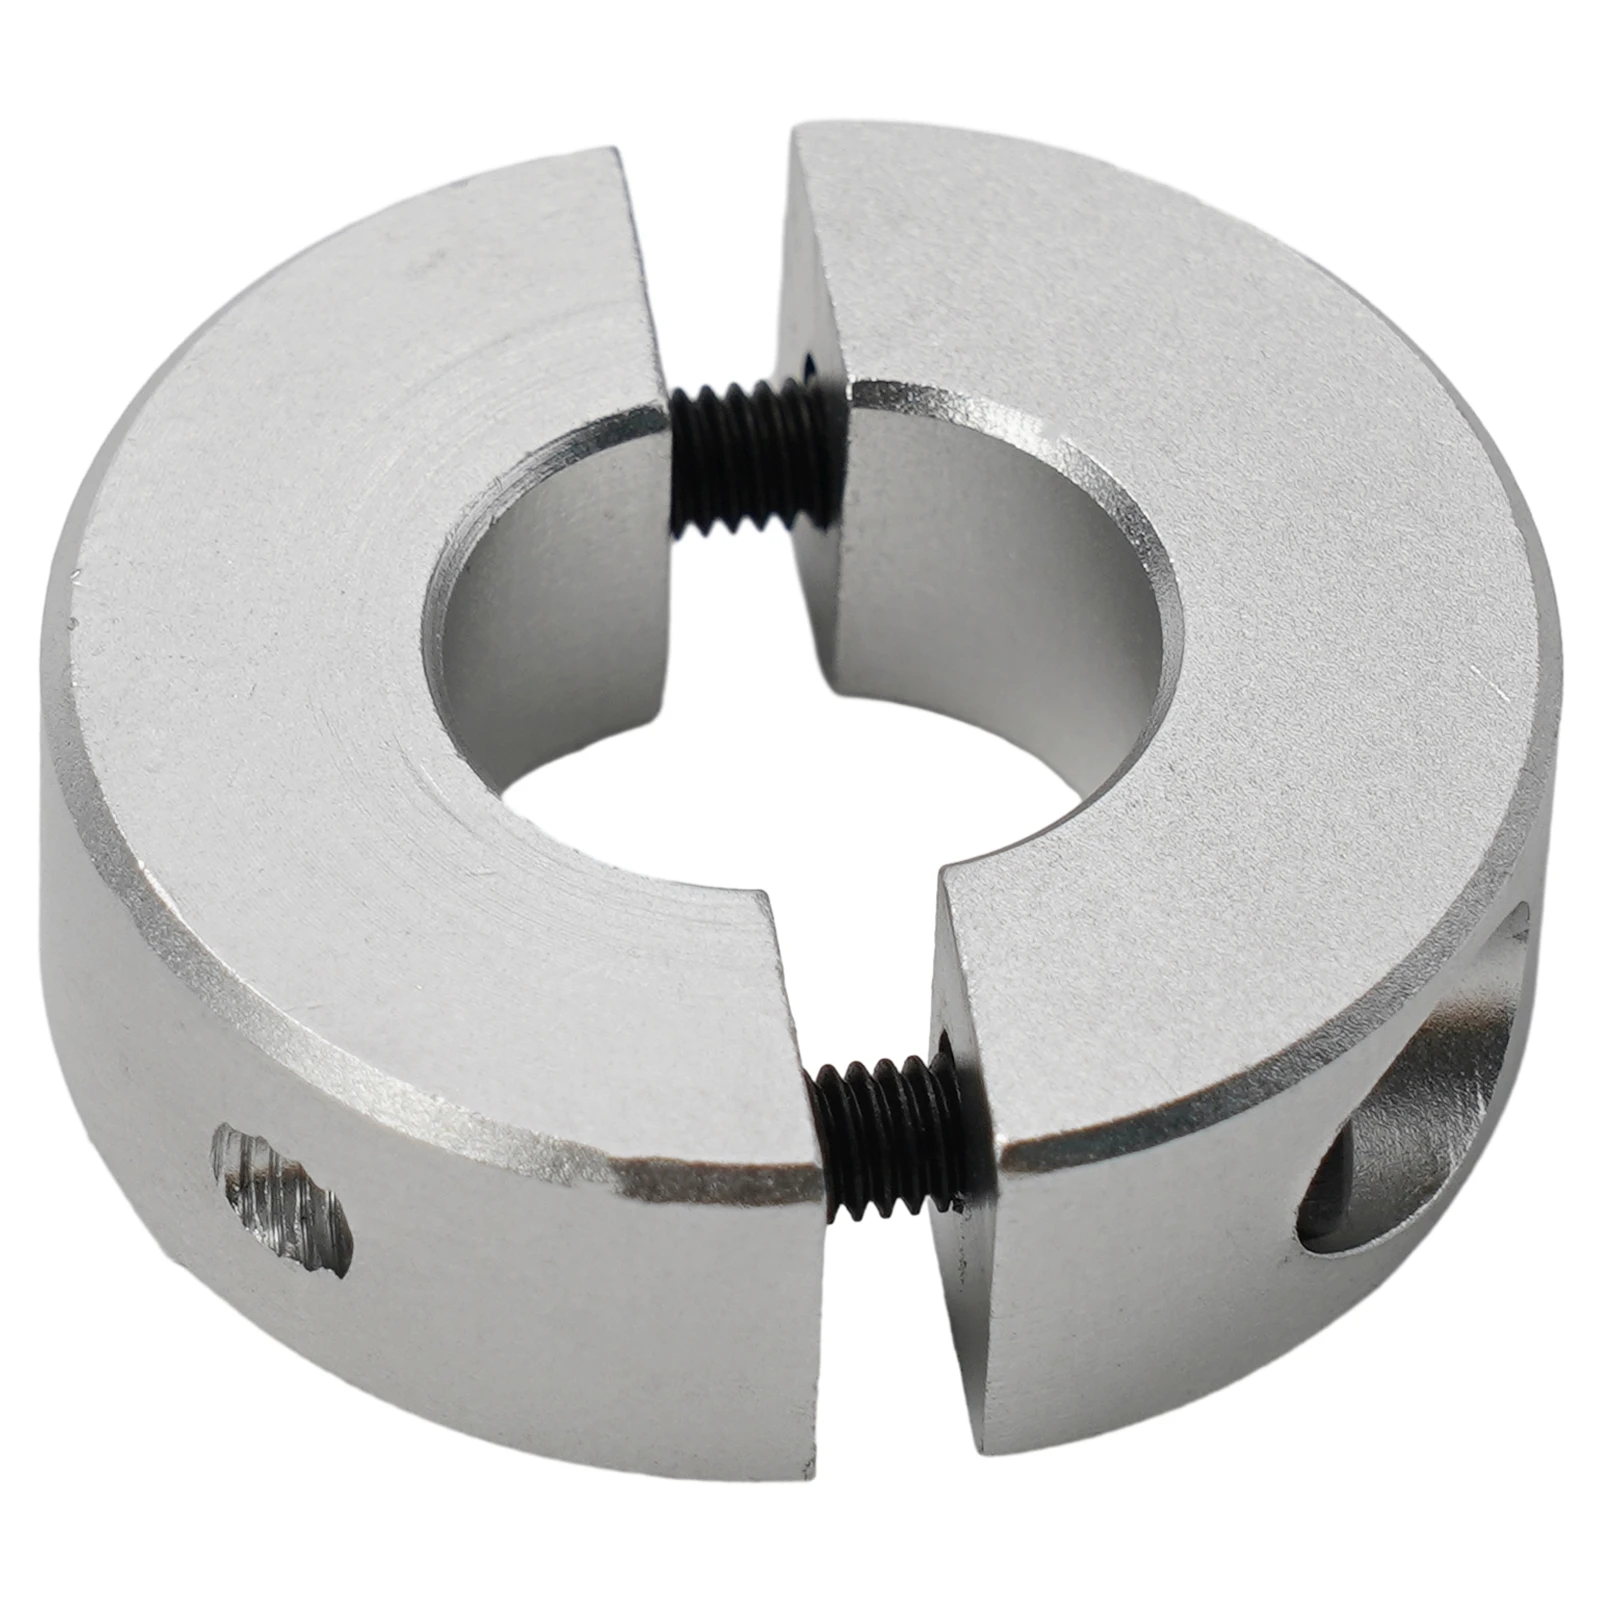  Фиксированные кольца из алюминиевого сплава Зажим Хомут Тип Хомут Вал Хомут 13 мм / 15 мм / 16 мм / 20 мм / 25 мм / 30 мм 1 шт. Высокое качество 4